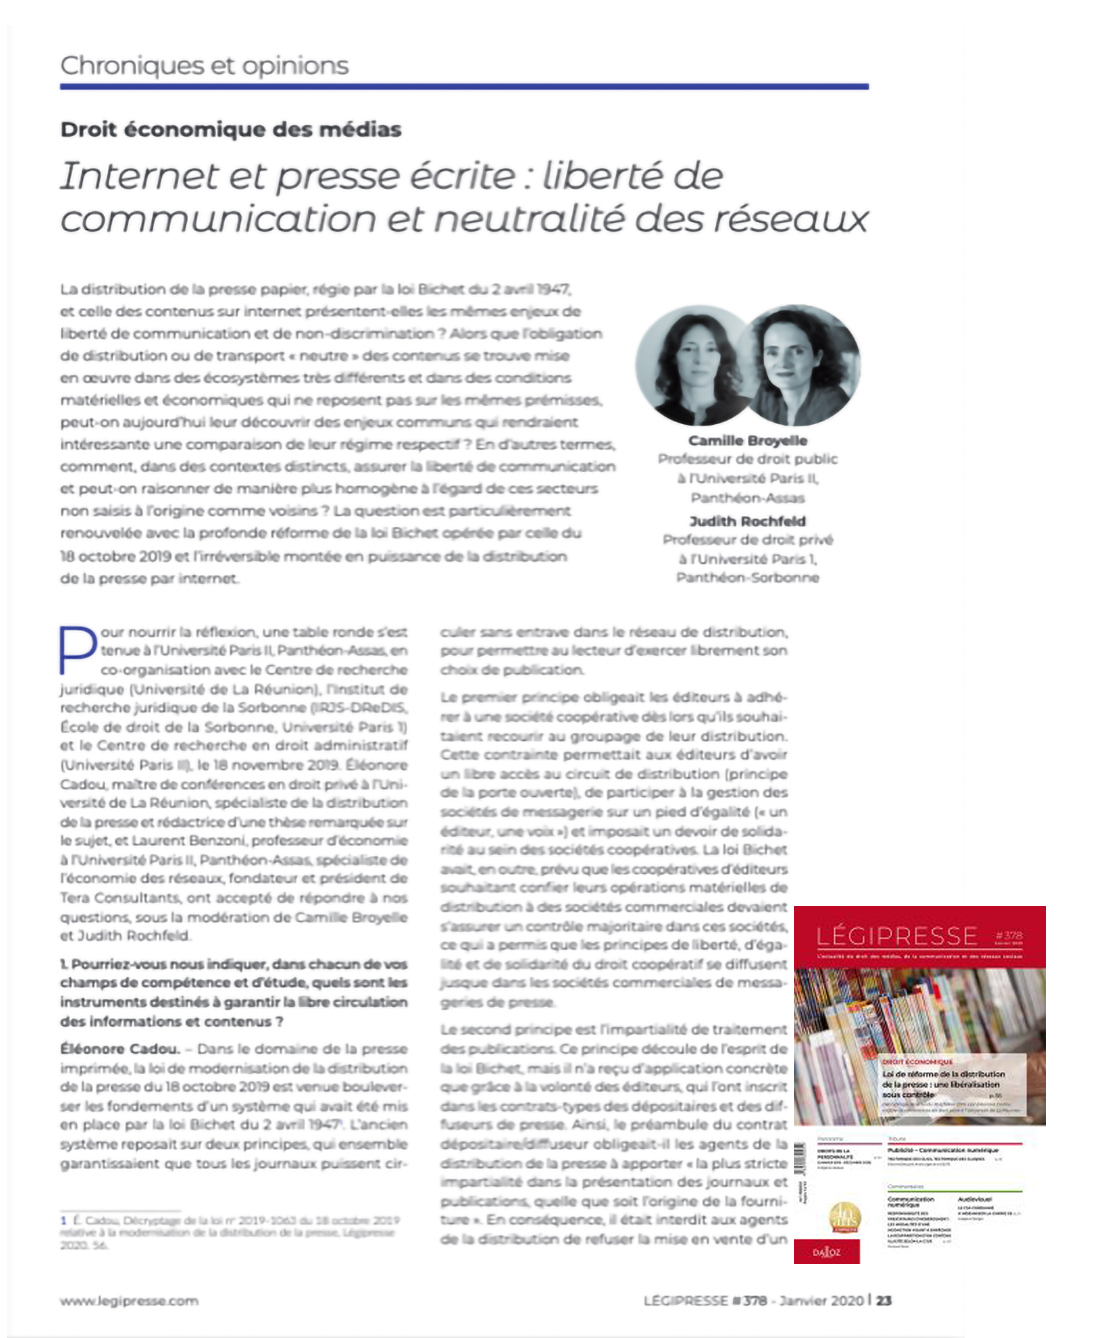 Visuel de l'article "Internet et presse écrite : liberté de communication et neutralité des réseaux